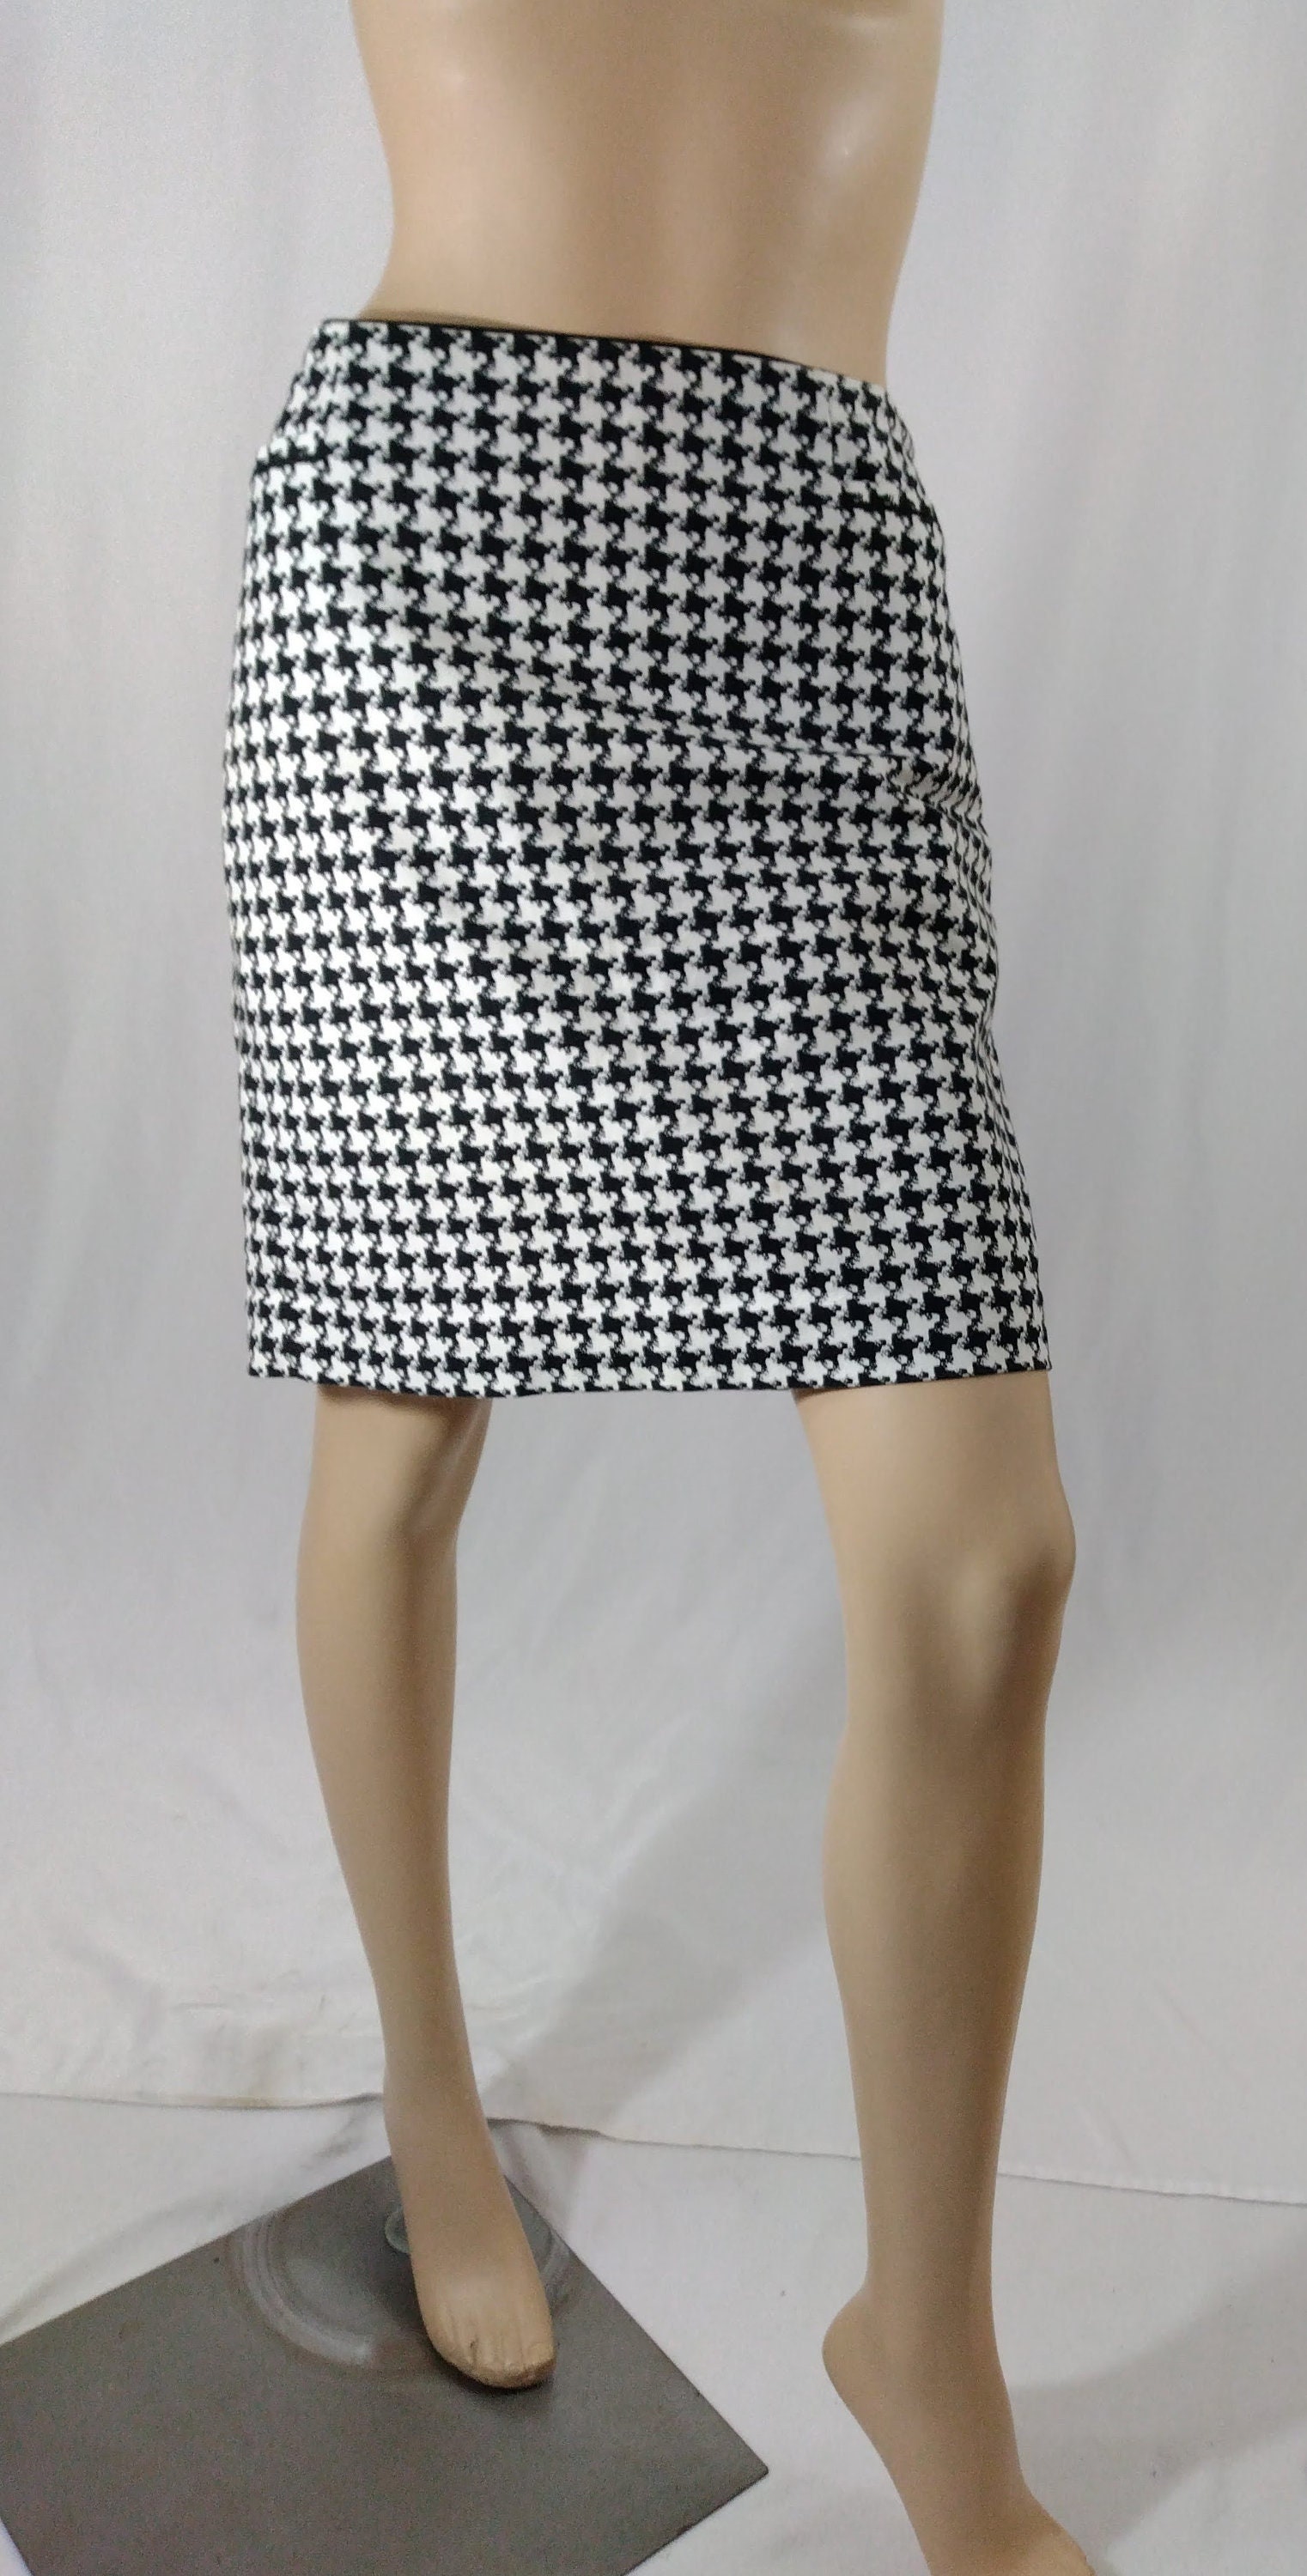 klynke Opdater aluminium Buy Houndstooth Skirt Women's Skirt Black White Pockets Fully Online in  India - Etsy